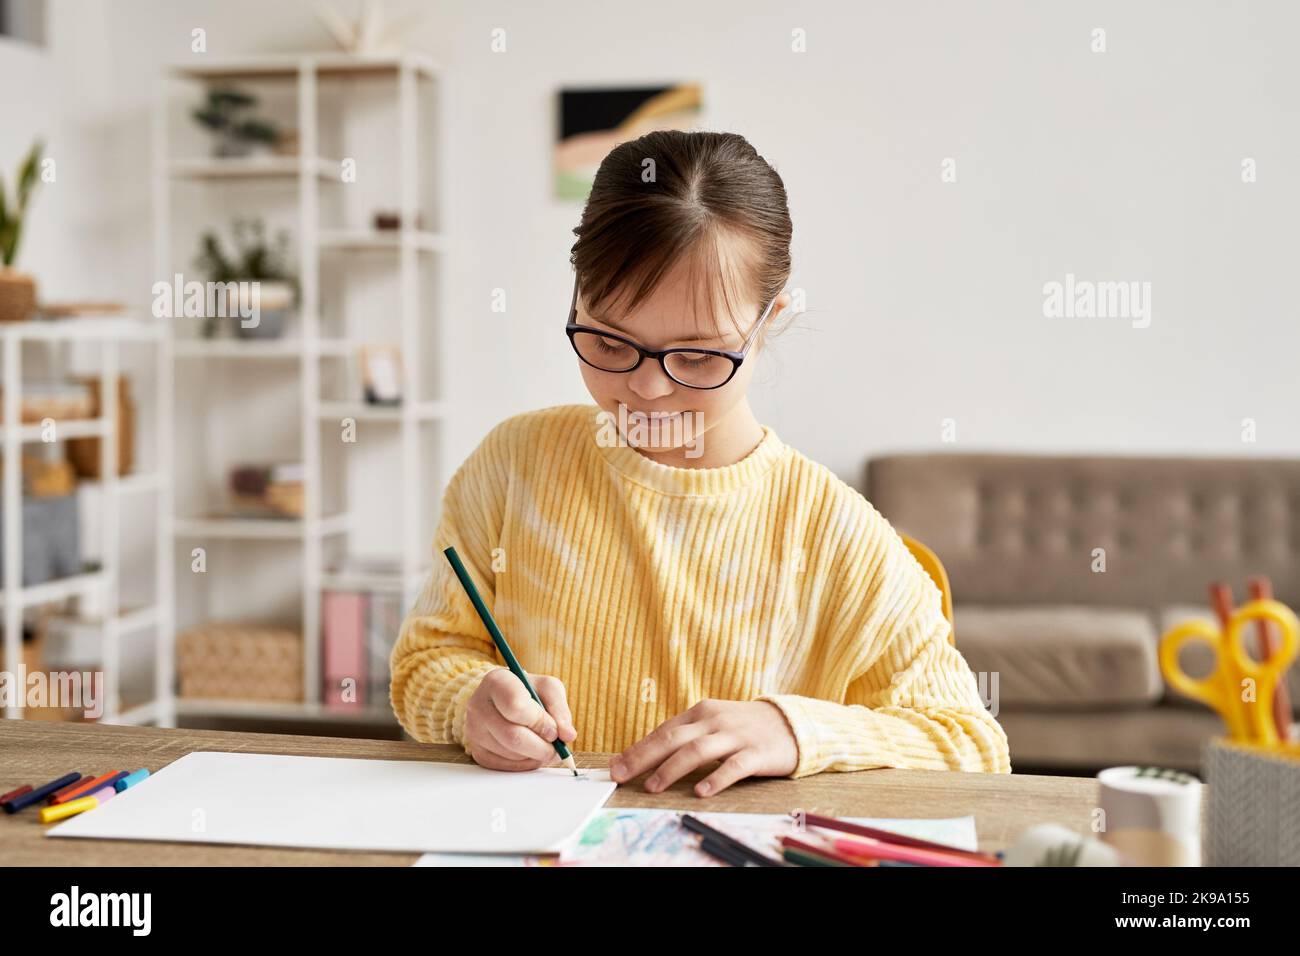 Portrait d'une adolescente atteinte du syndrome de Down, en train de dessiner des images à table dans une pièce confortable et en souriant, espace de copie Banque D'Images